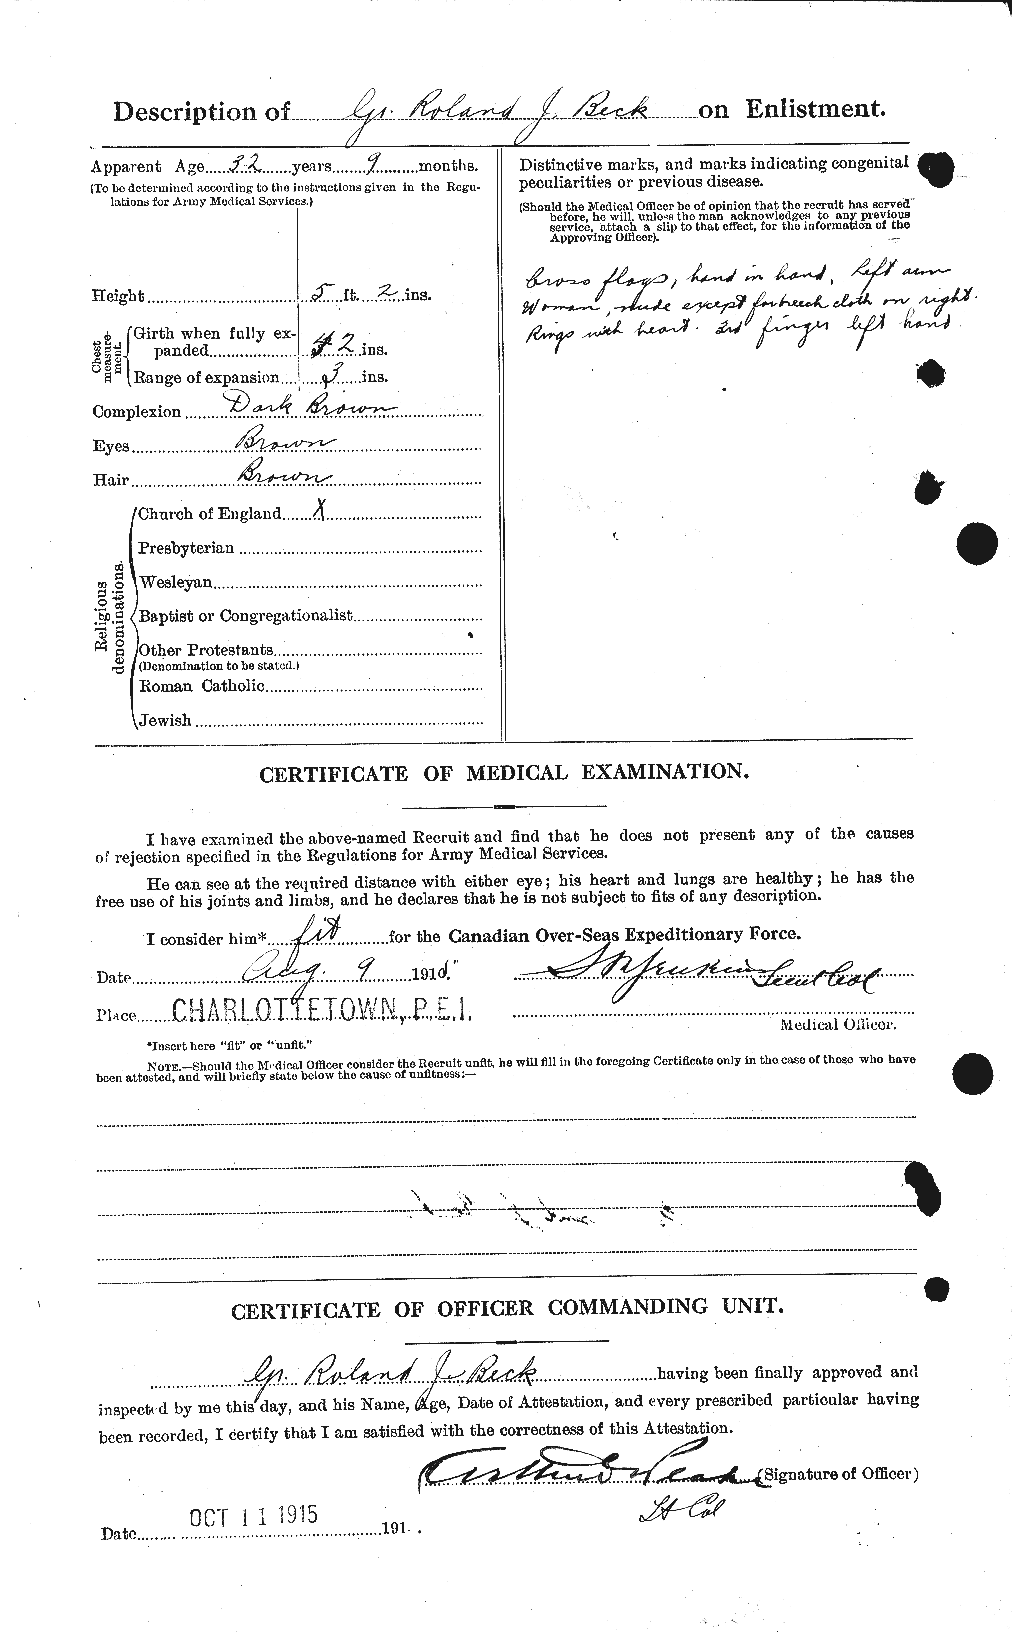 Dossiers du Personnel de la Première Guerre mondiale - CEC 232216b